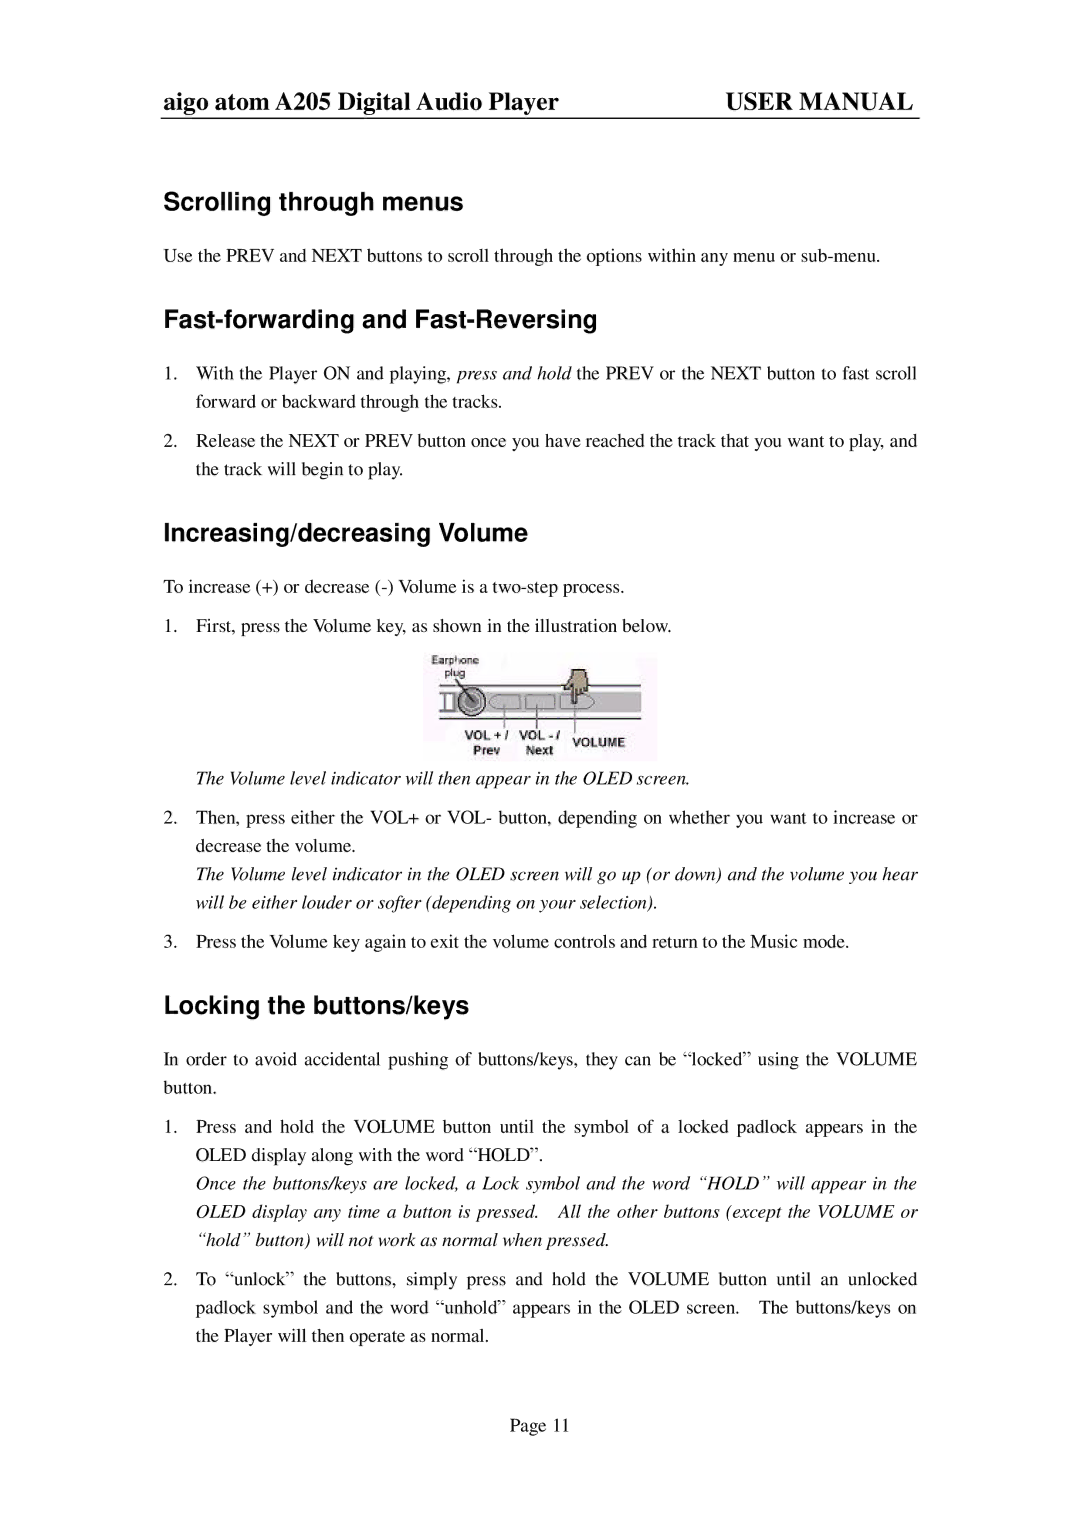 Aigo atom A205 user manual Scrolling through menus, Fast-forwarding and Fast-Reversing, Increasing/decreasing Volume 